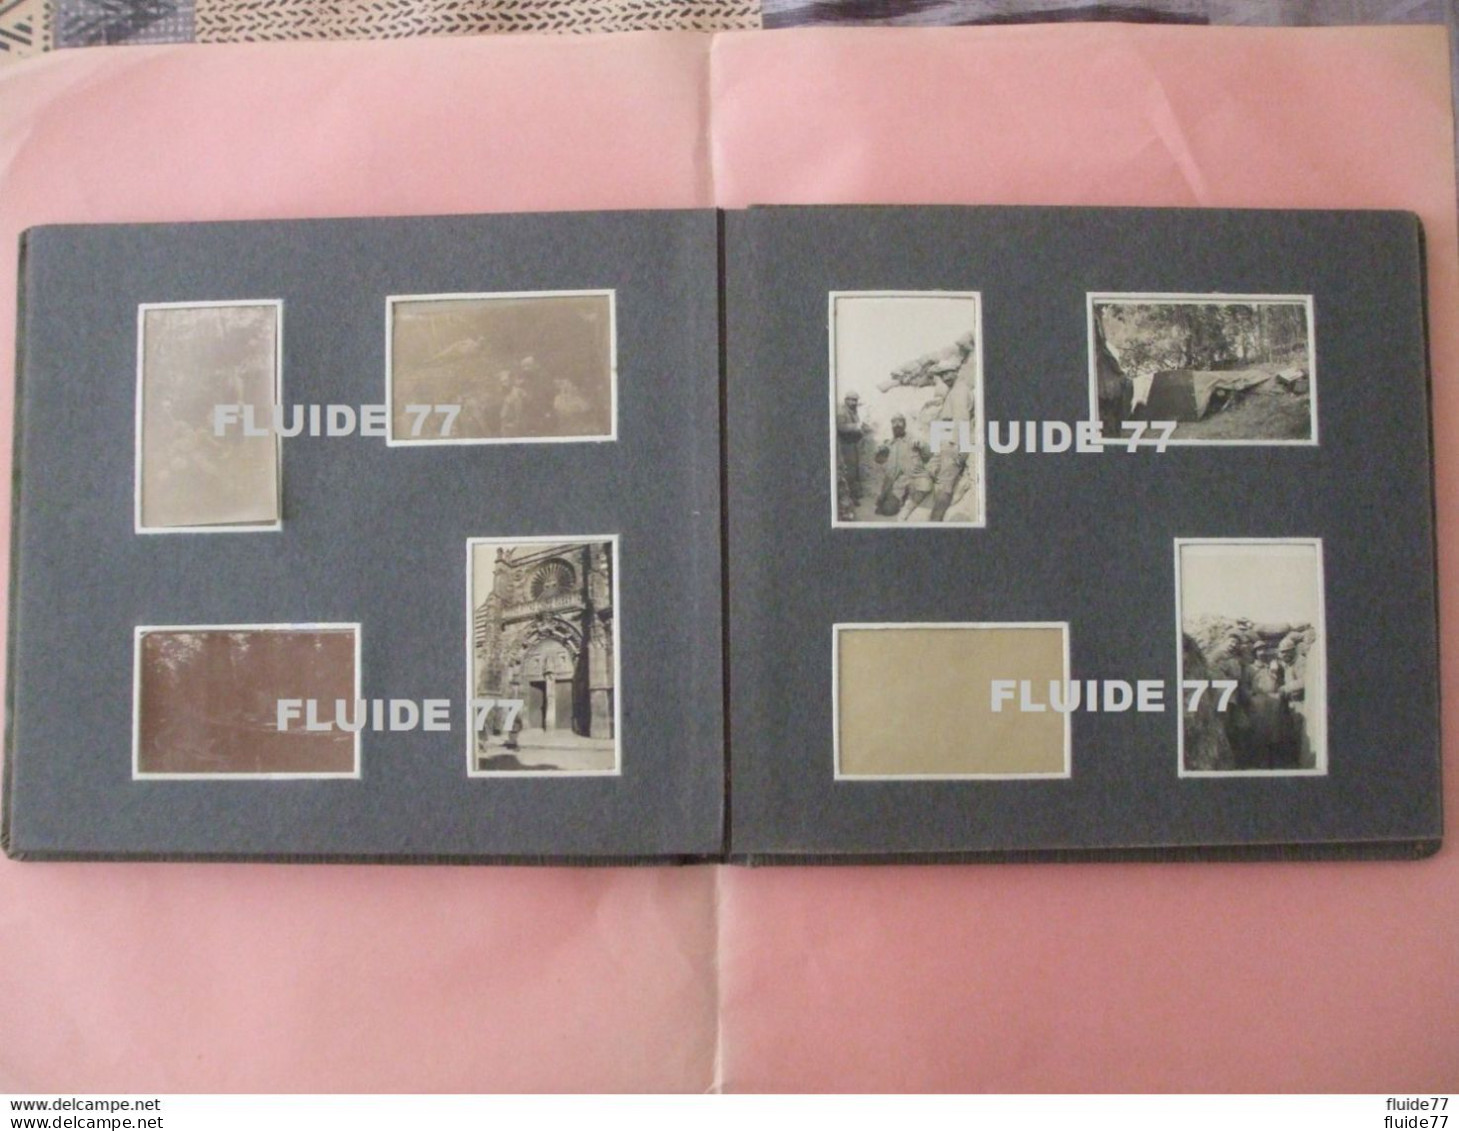 @ rare album ( de ma collect.)  d'un  officier du 131 Régiment d' Infanterie , 1915 , super album.! @